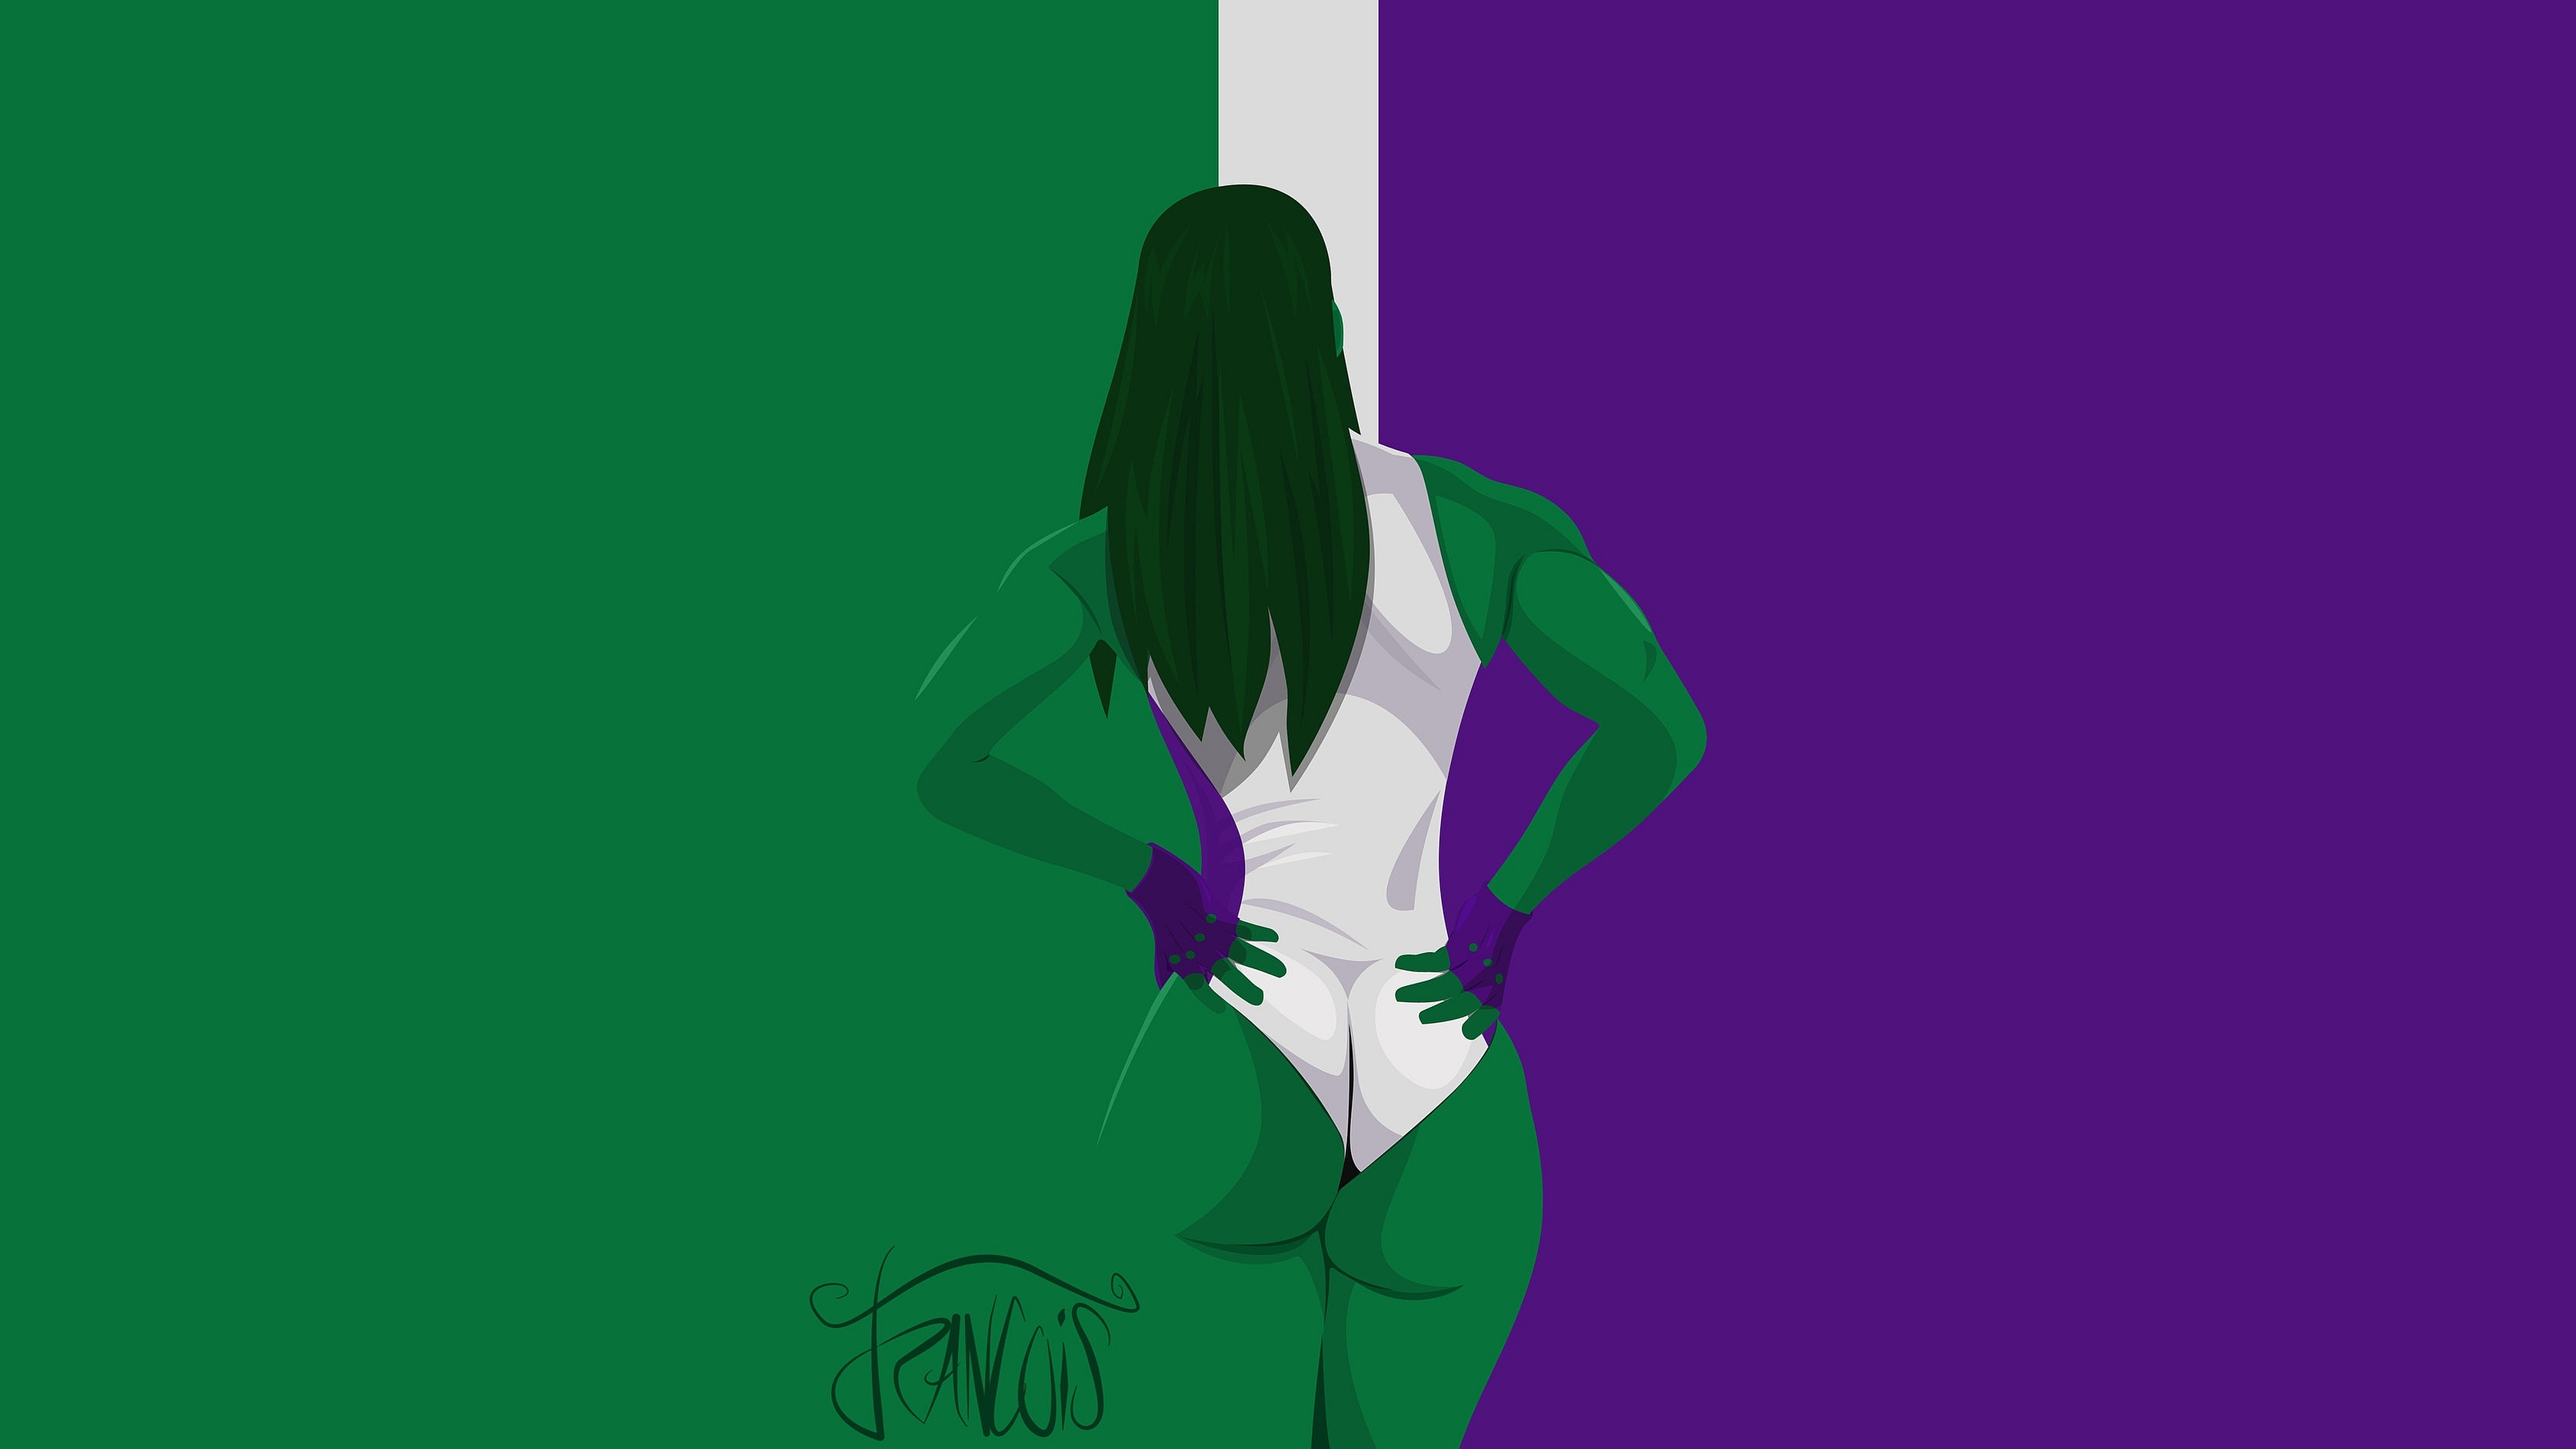 彼女の壁紙,緑,紫の,バイオレット,アニメーション,図